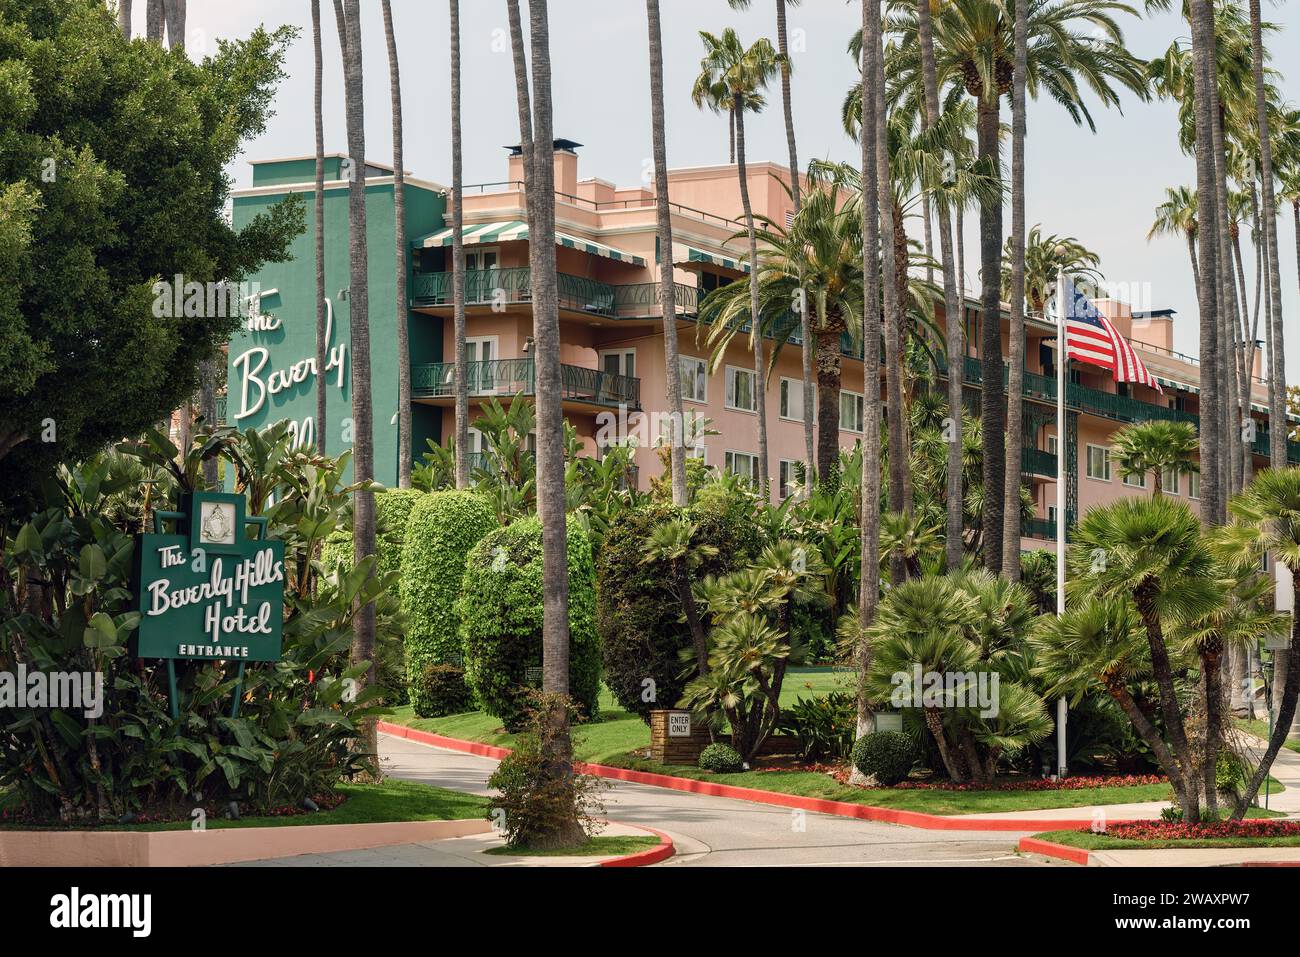 Das Beverly Hills Hotel am Sunset Boulevard in Beverly Hills, Los Angeles, Kalifornien. Außenansicht des Hotels in charakteristischen Rosa- und Grüntönen. Stockfoto